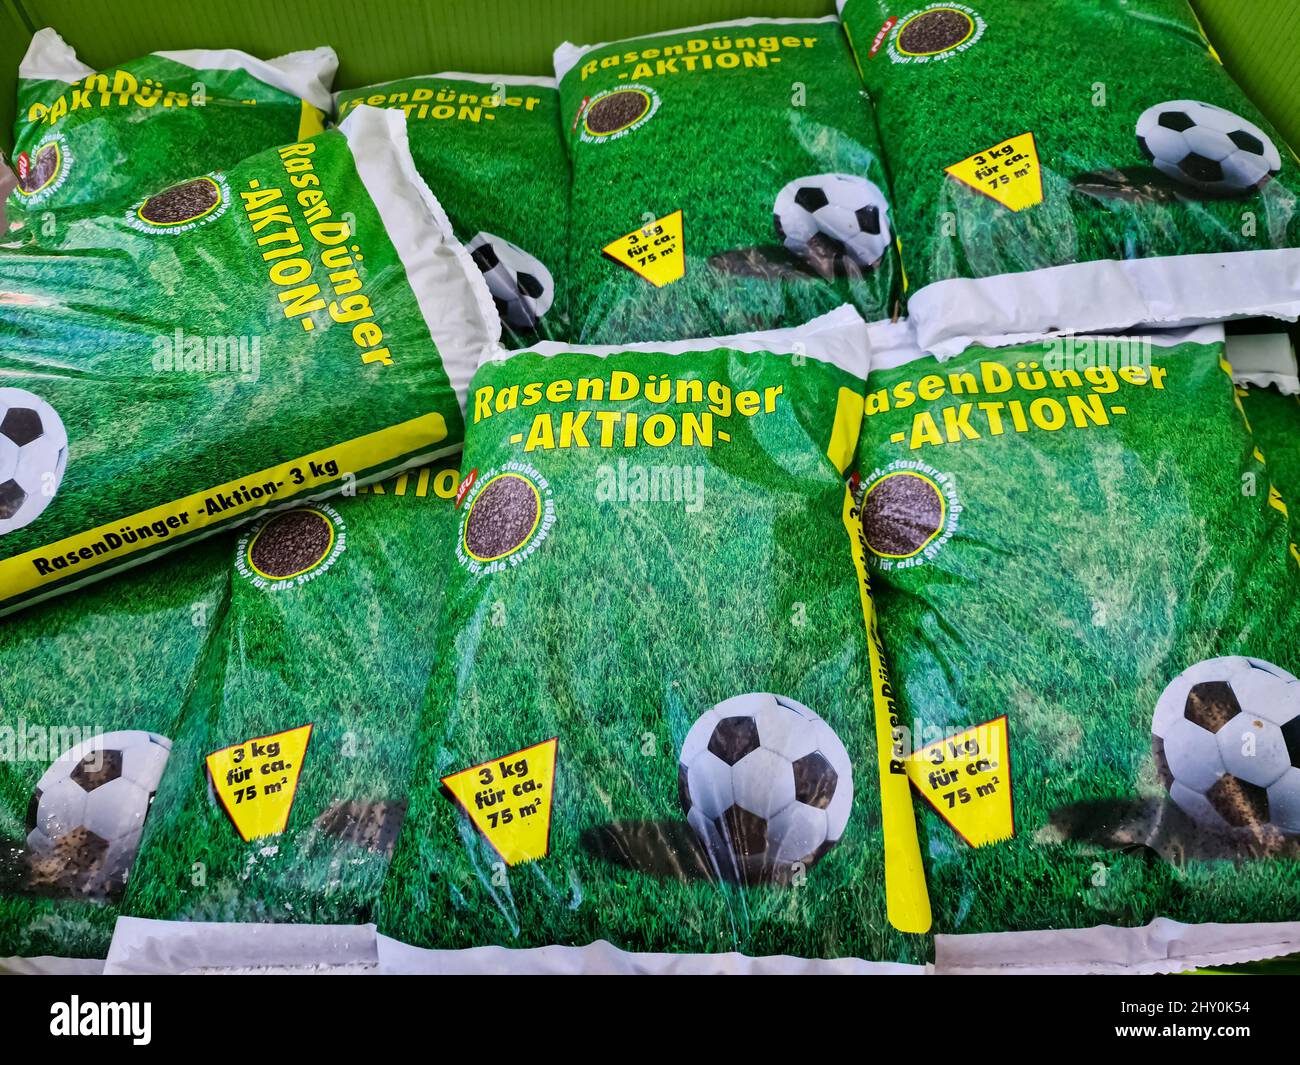 Säcke Rasendünger mit Fußballwerbung darauf im Verkaufsbereich eines Gartencenters Stockfoto